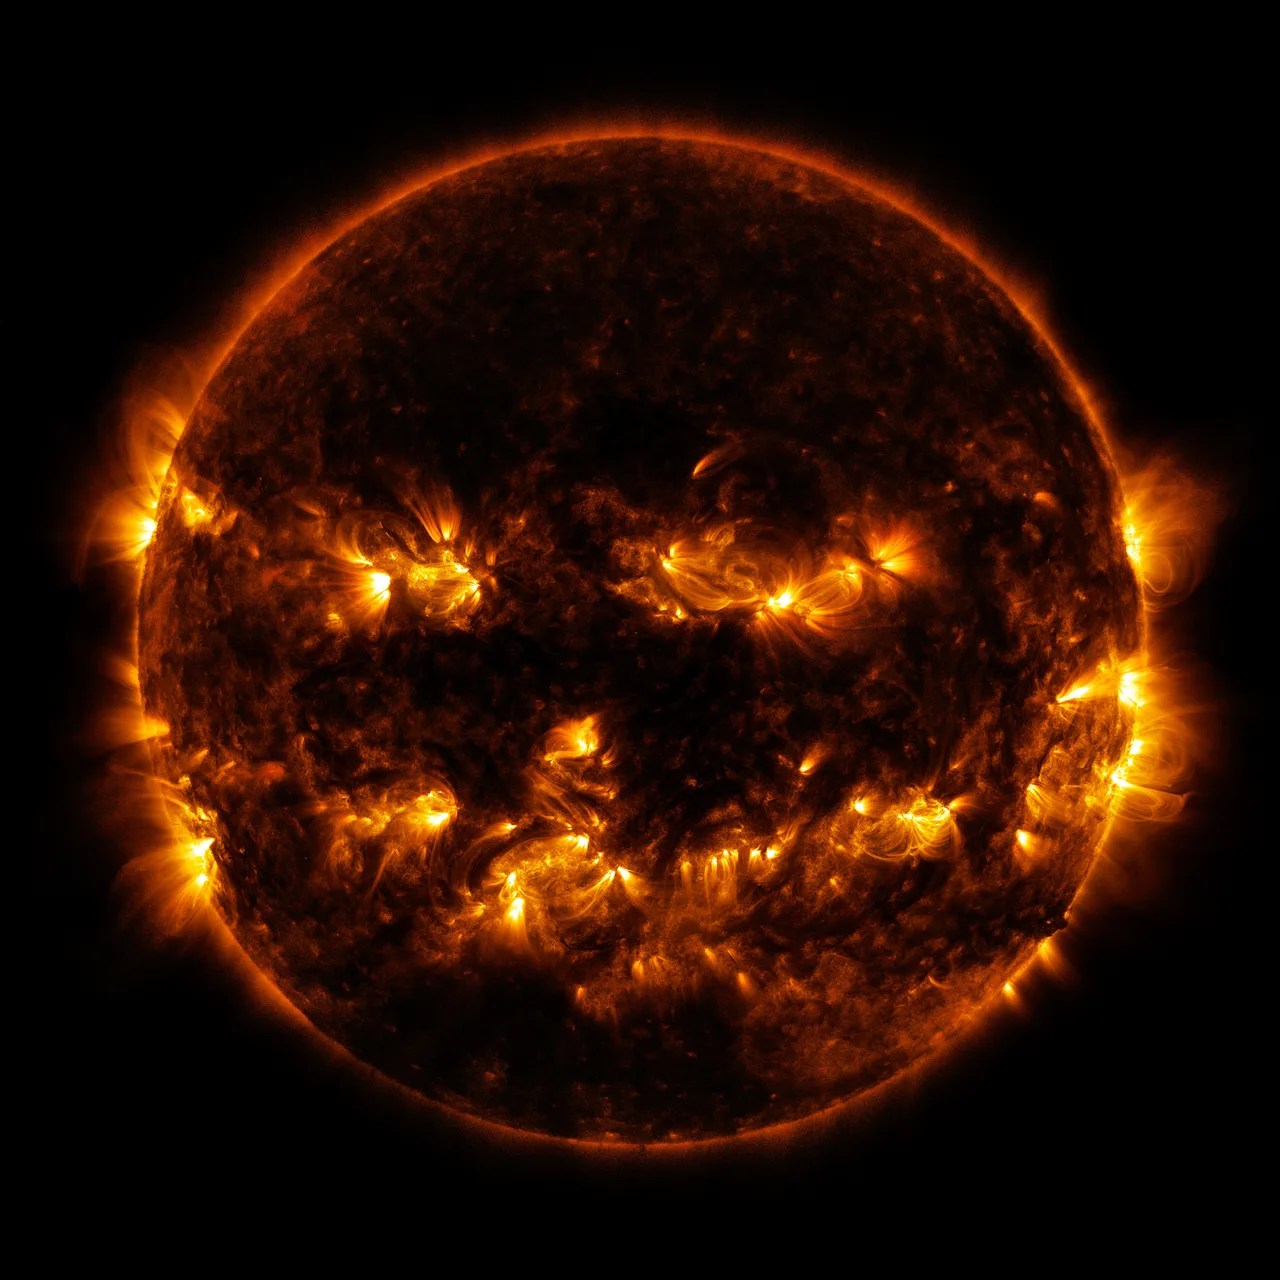 Eruptions on the Sun resemble a grinning Halloween pumpkin